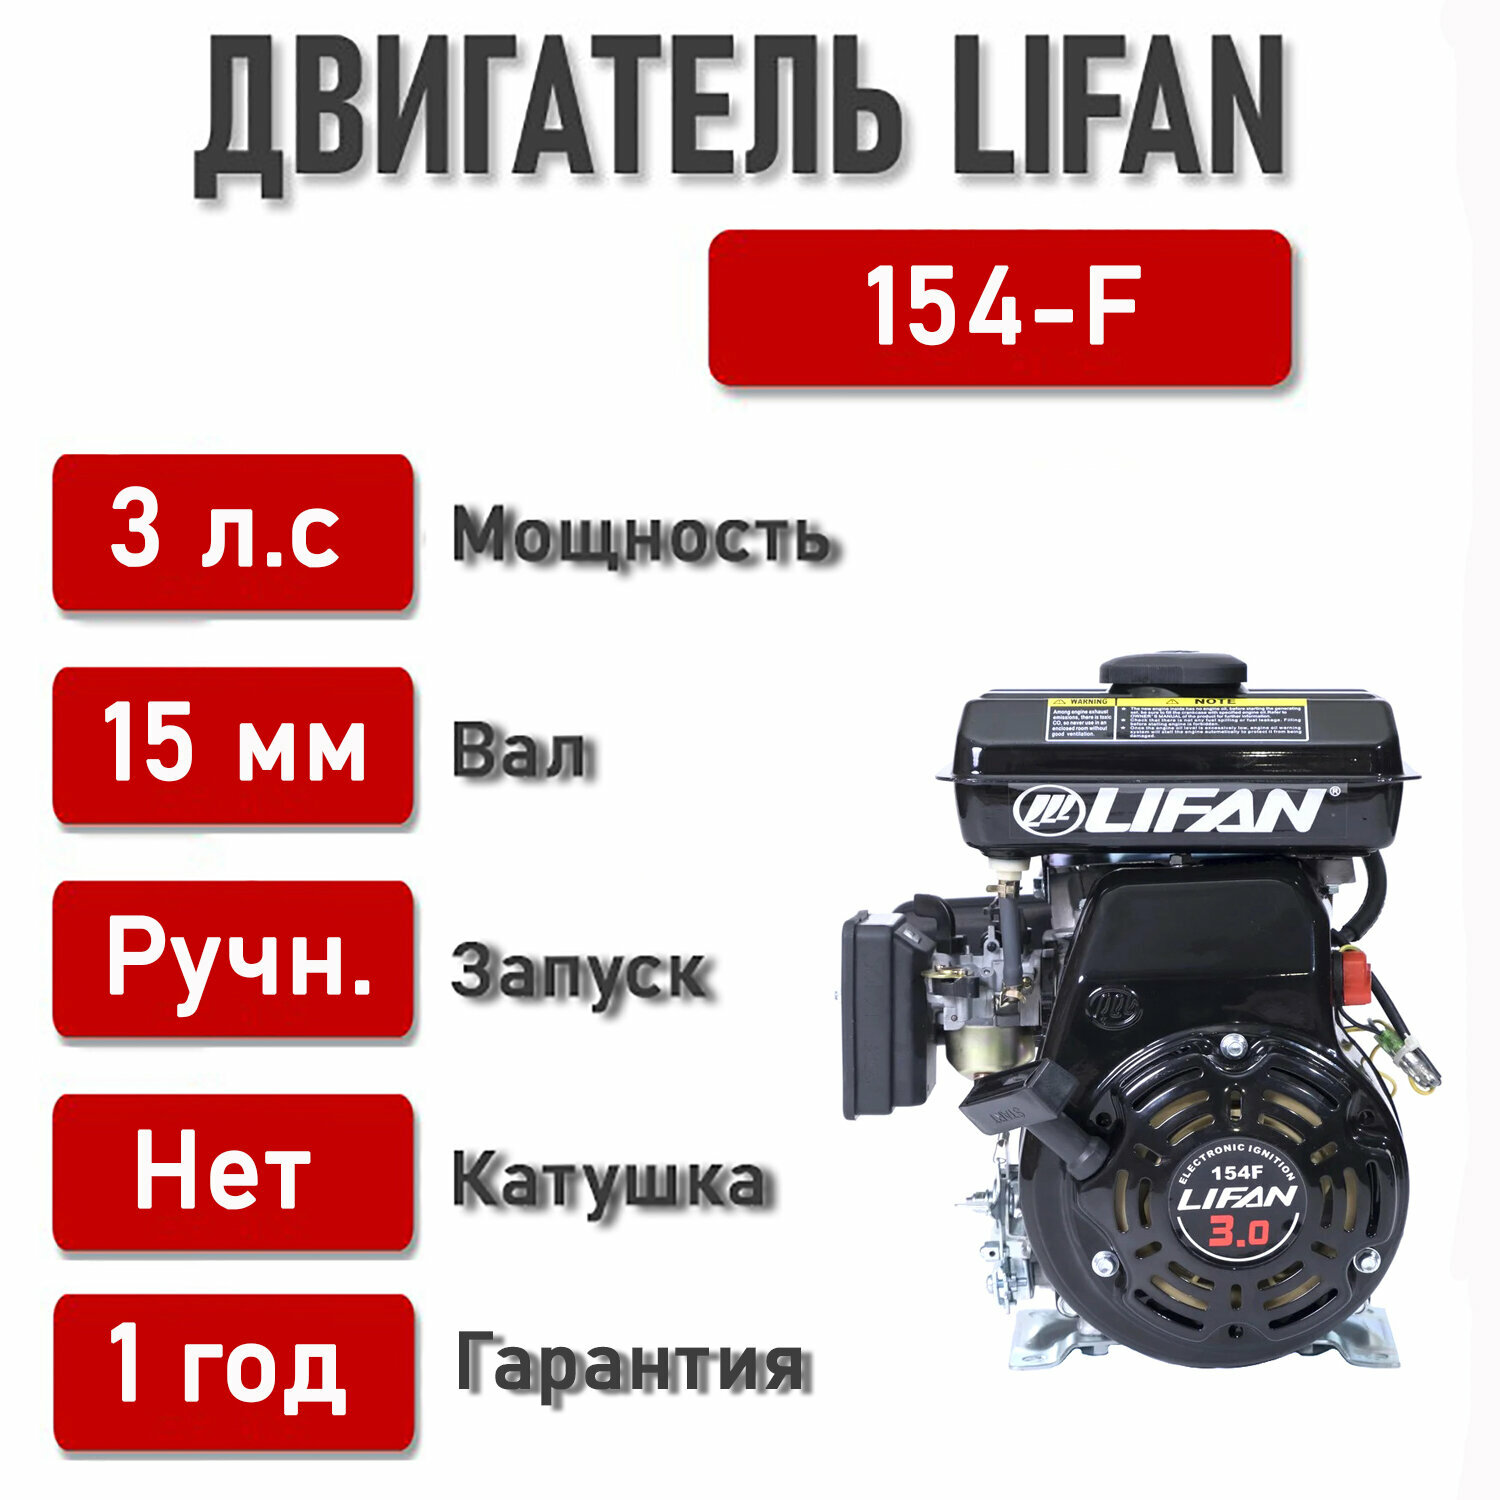 Двигатель LIFAN 3 л. с. 154F (2,2 кВт, 4х такт, бензин, вал диаметром 15 мм)